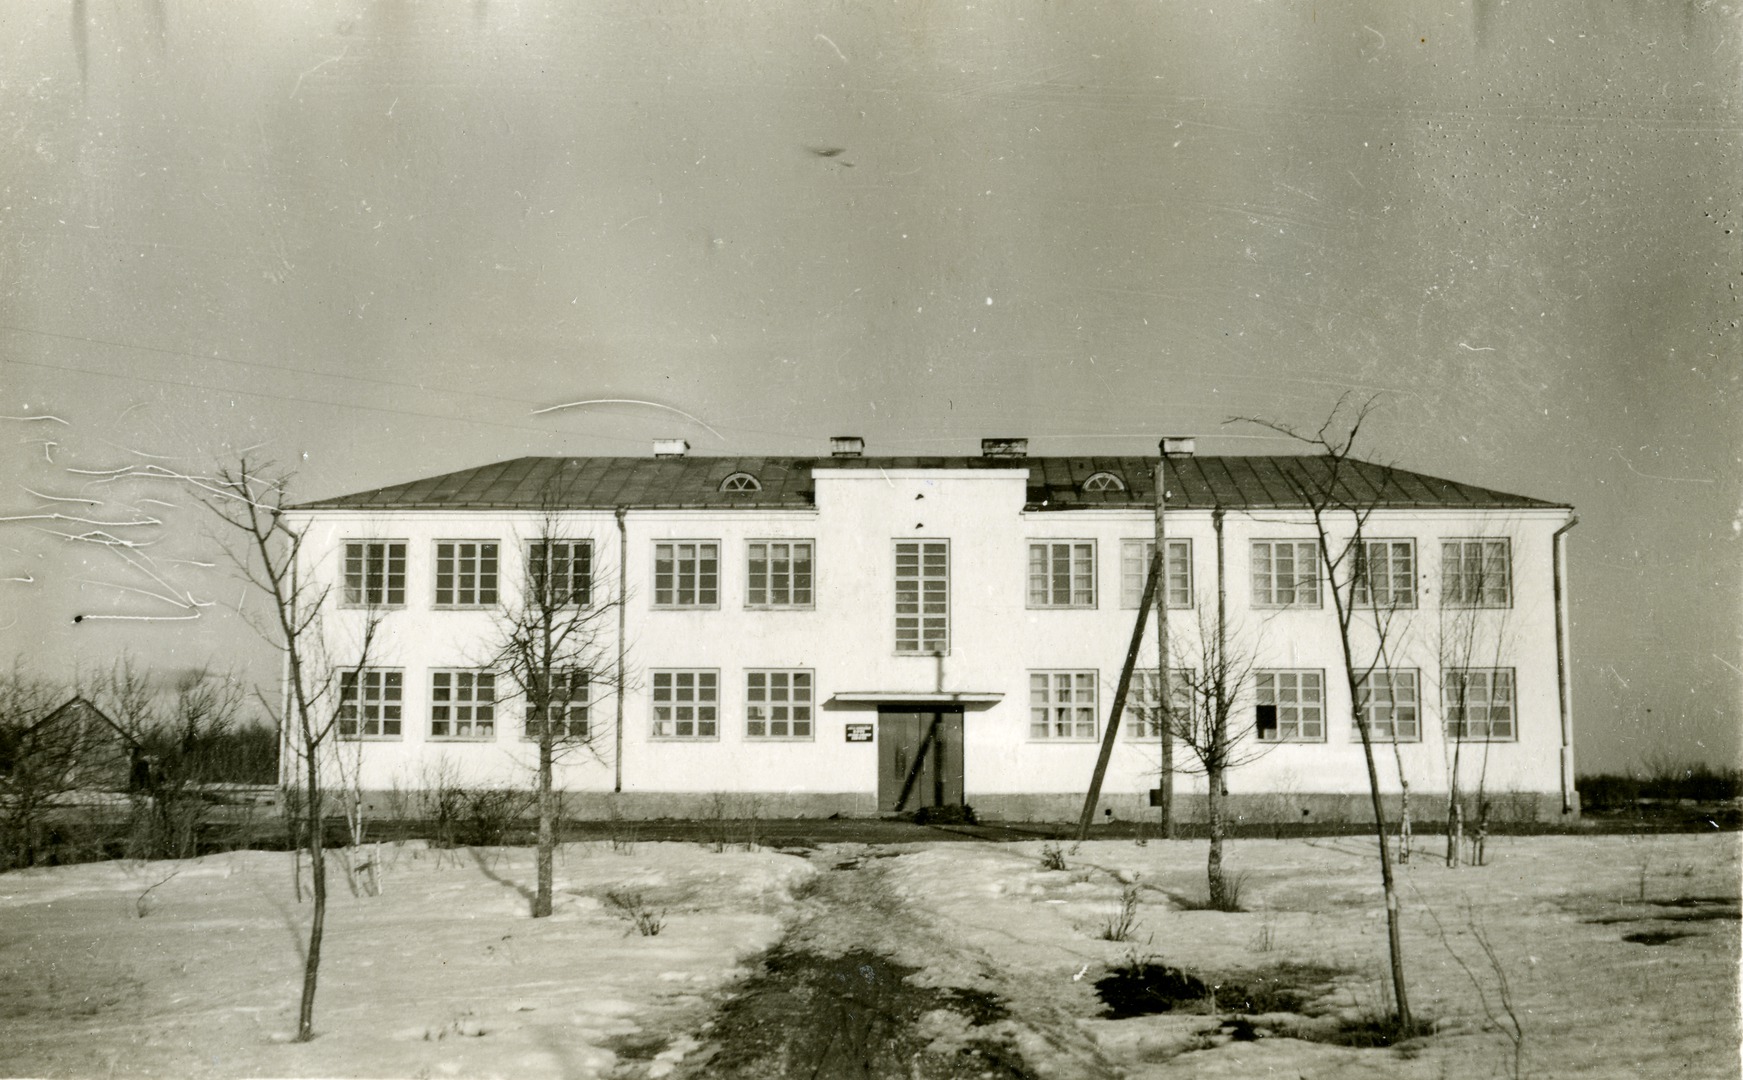 Kahtla 8-kl School buildings in Saaremaa